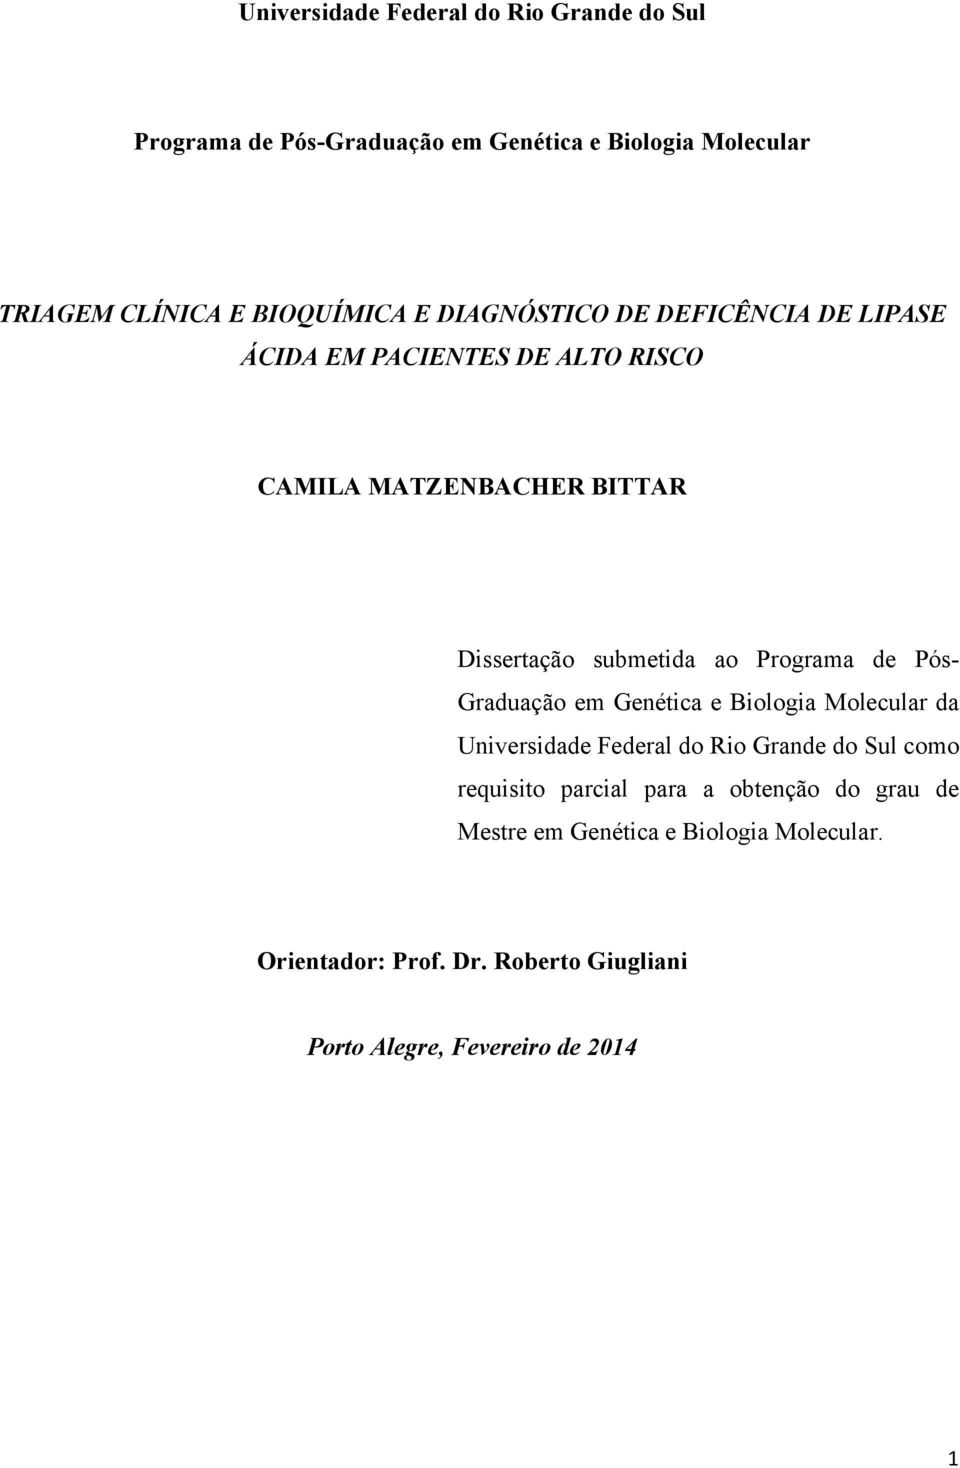 Programa de Pós- Graduação em Genética e Biologia Molecular da Universidade Federal do Rio Grande do Sul como requisito parcial